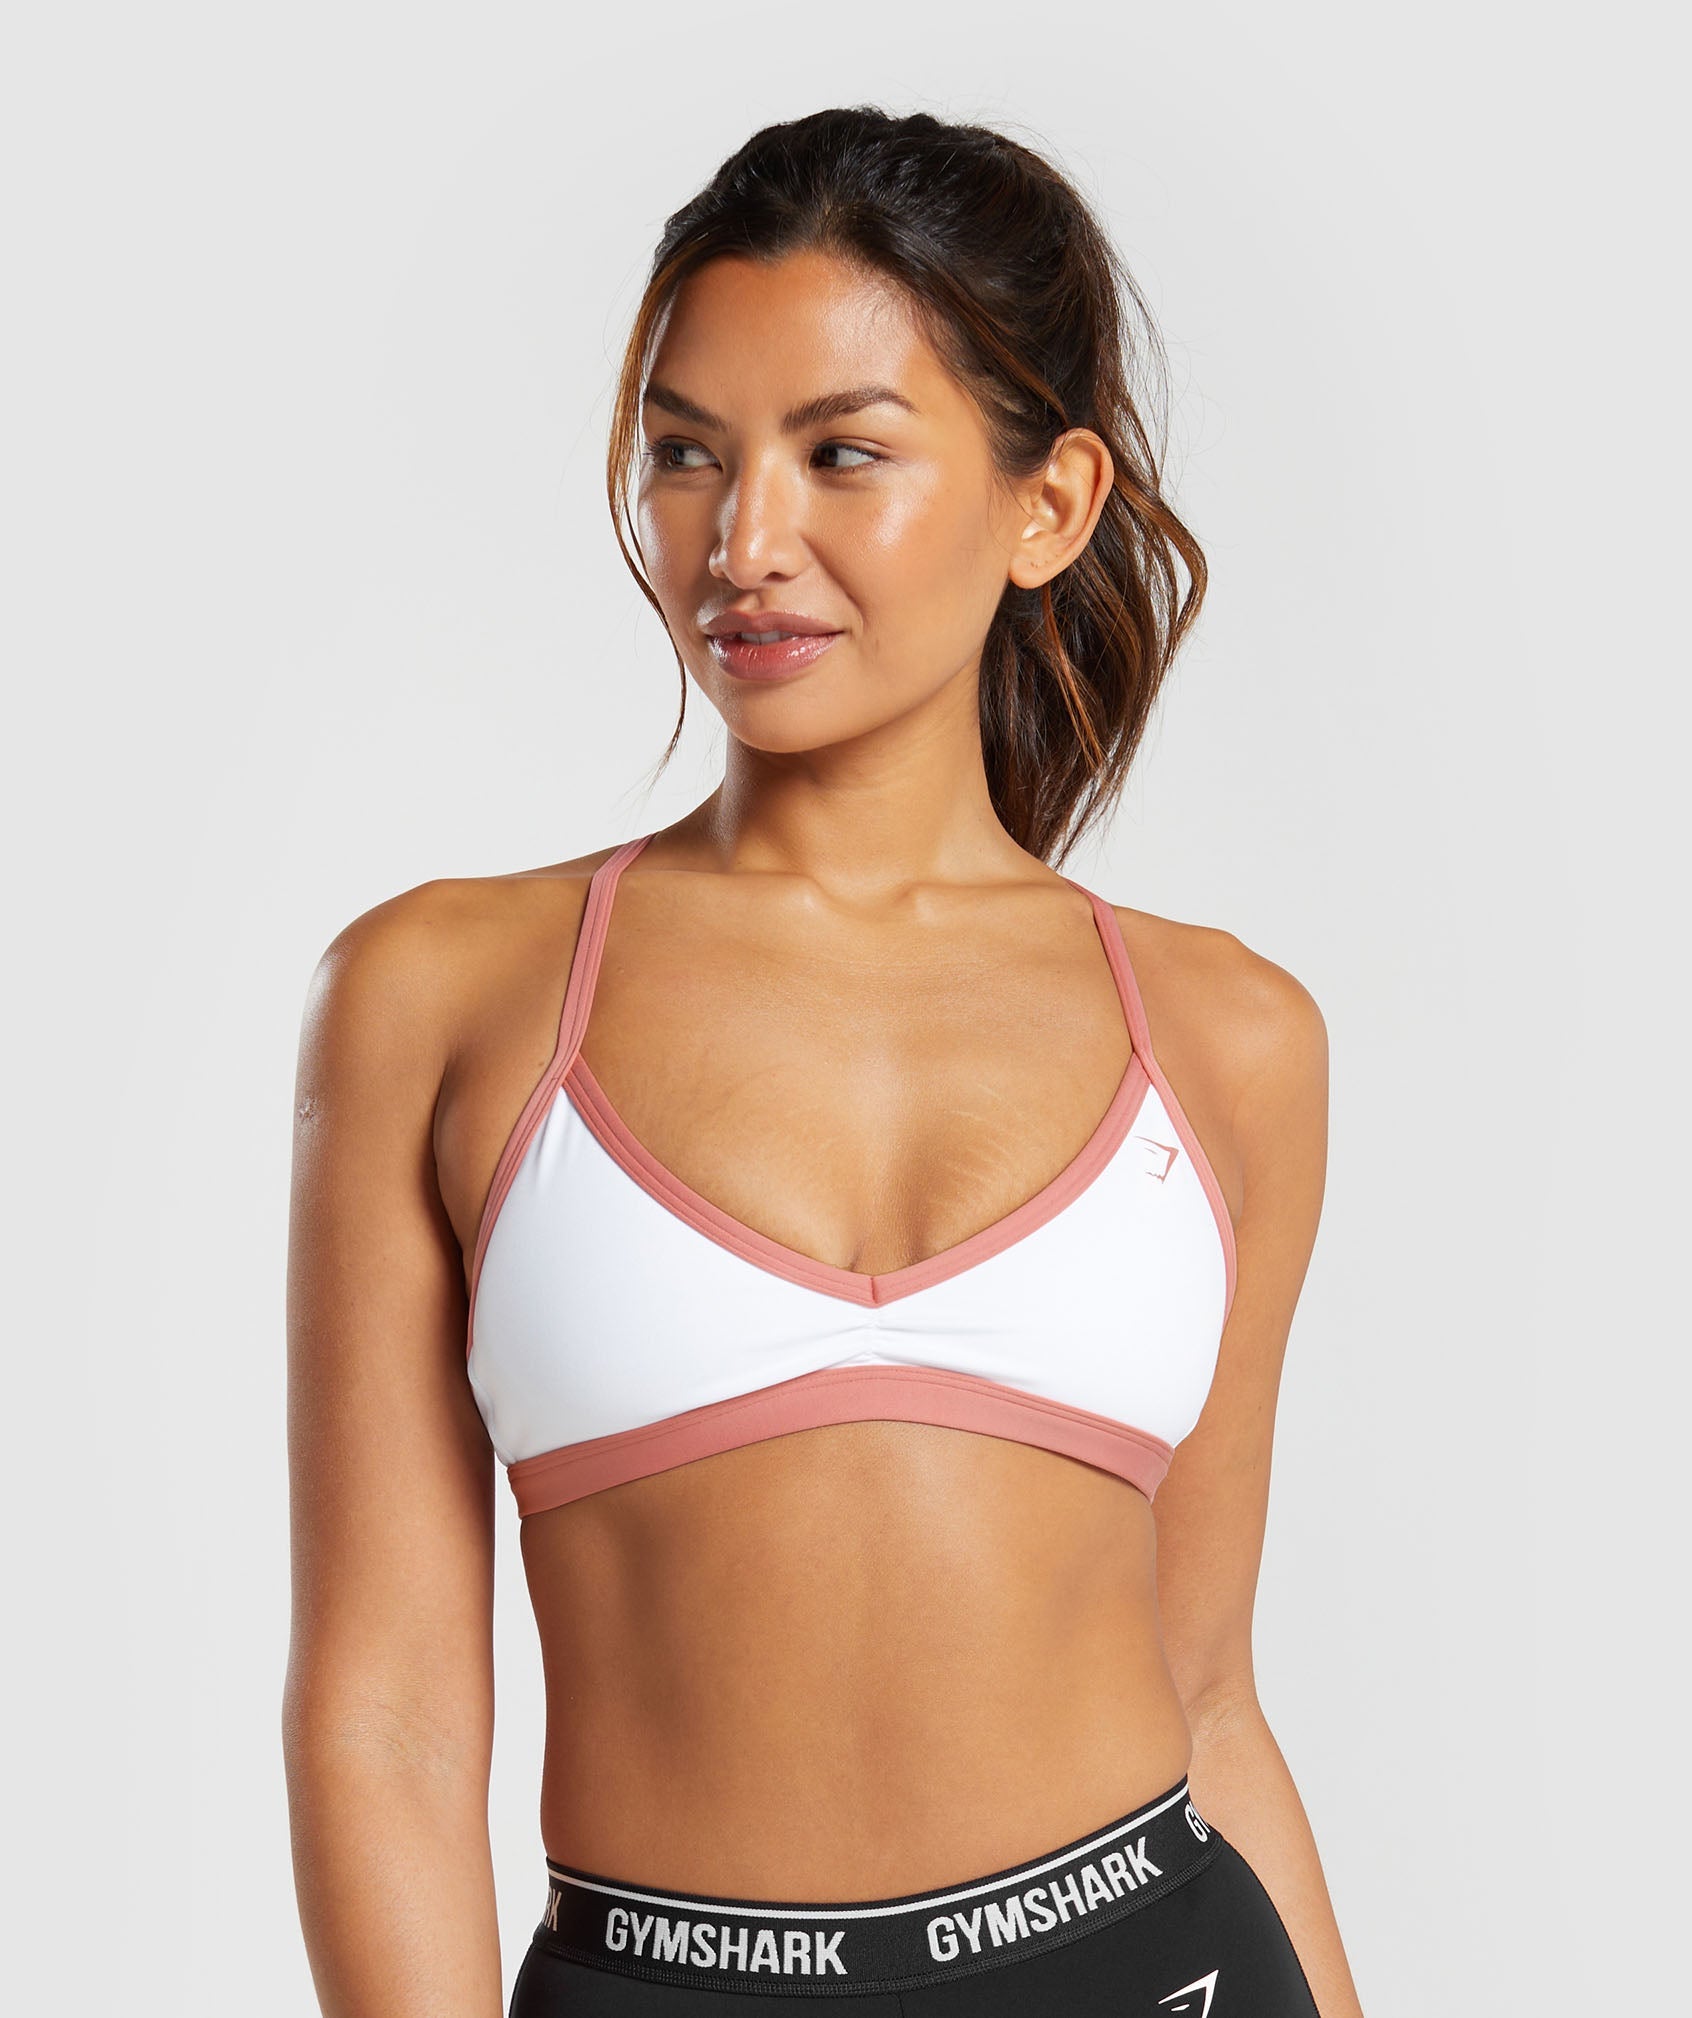 Women's bra Calvin Klein Medium Support Sports Bra - bright white